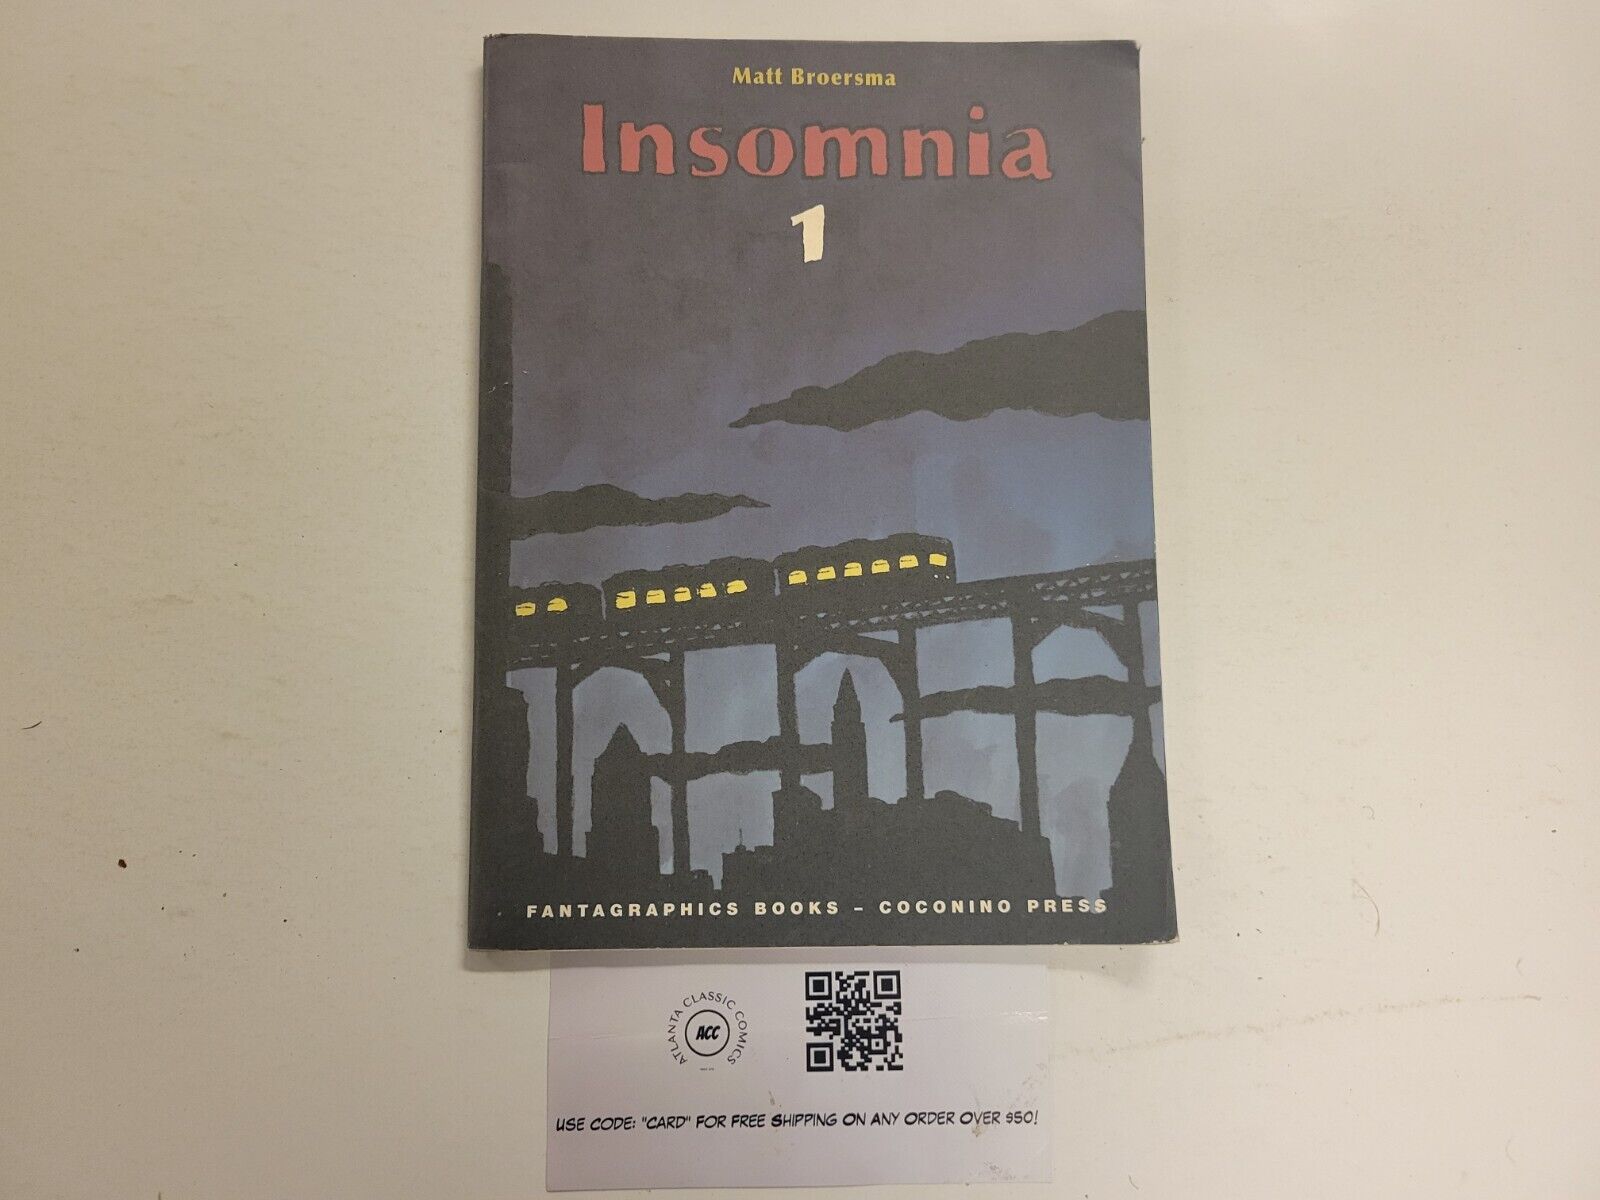 Insomnia #1 VF Fantagraphic Books Coconio Press Matt Broersma 1 TJ23